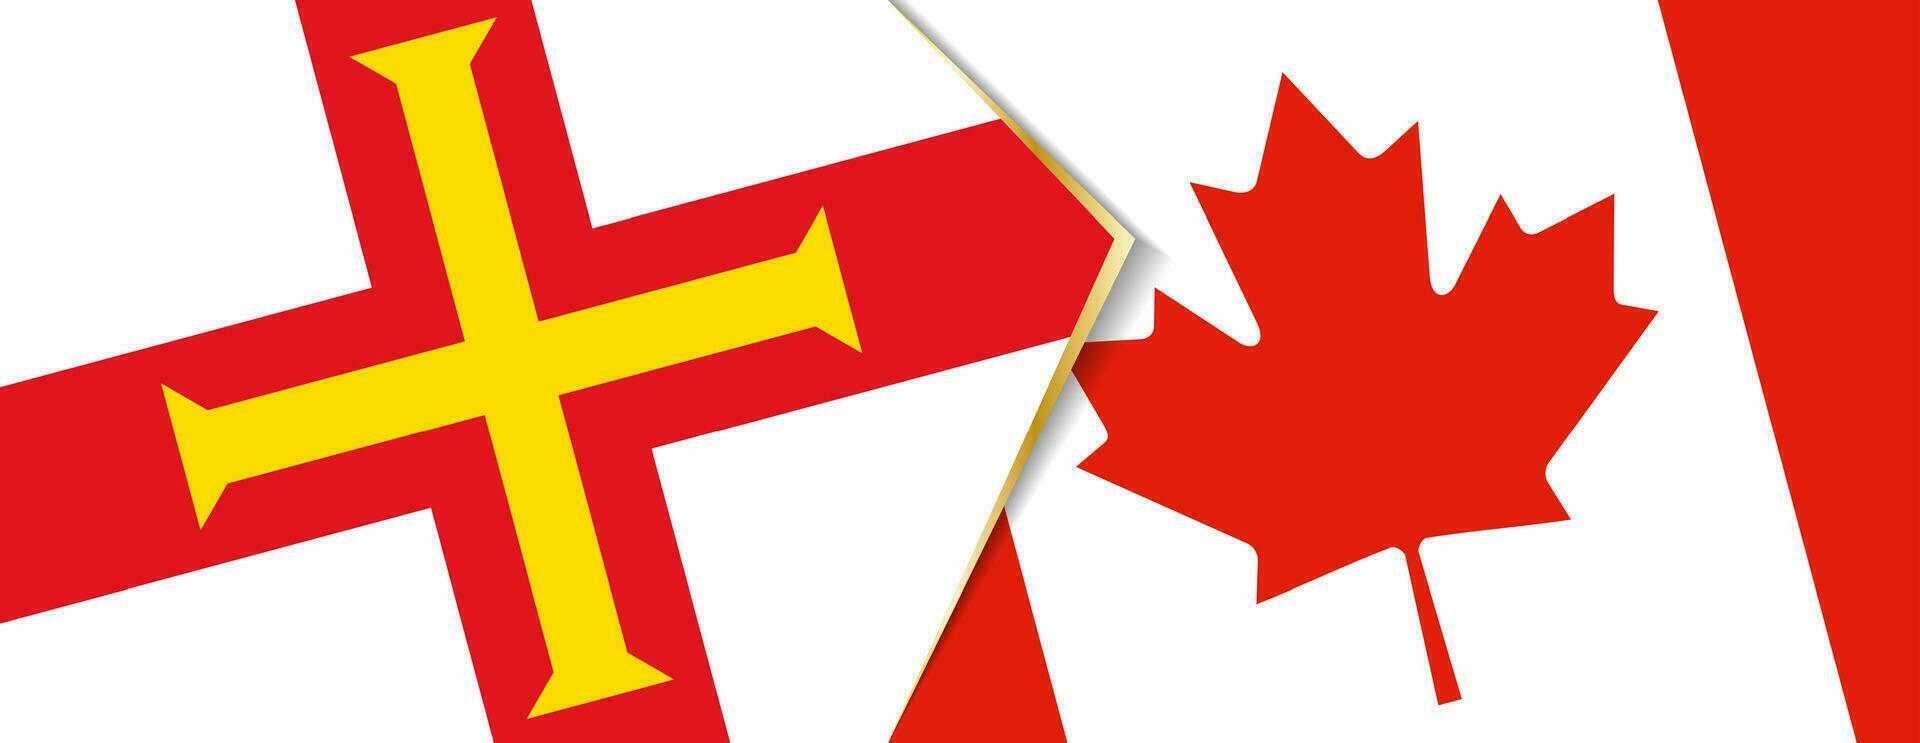 guernsey och kanada flaggor, två vektor flaggor.